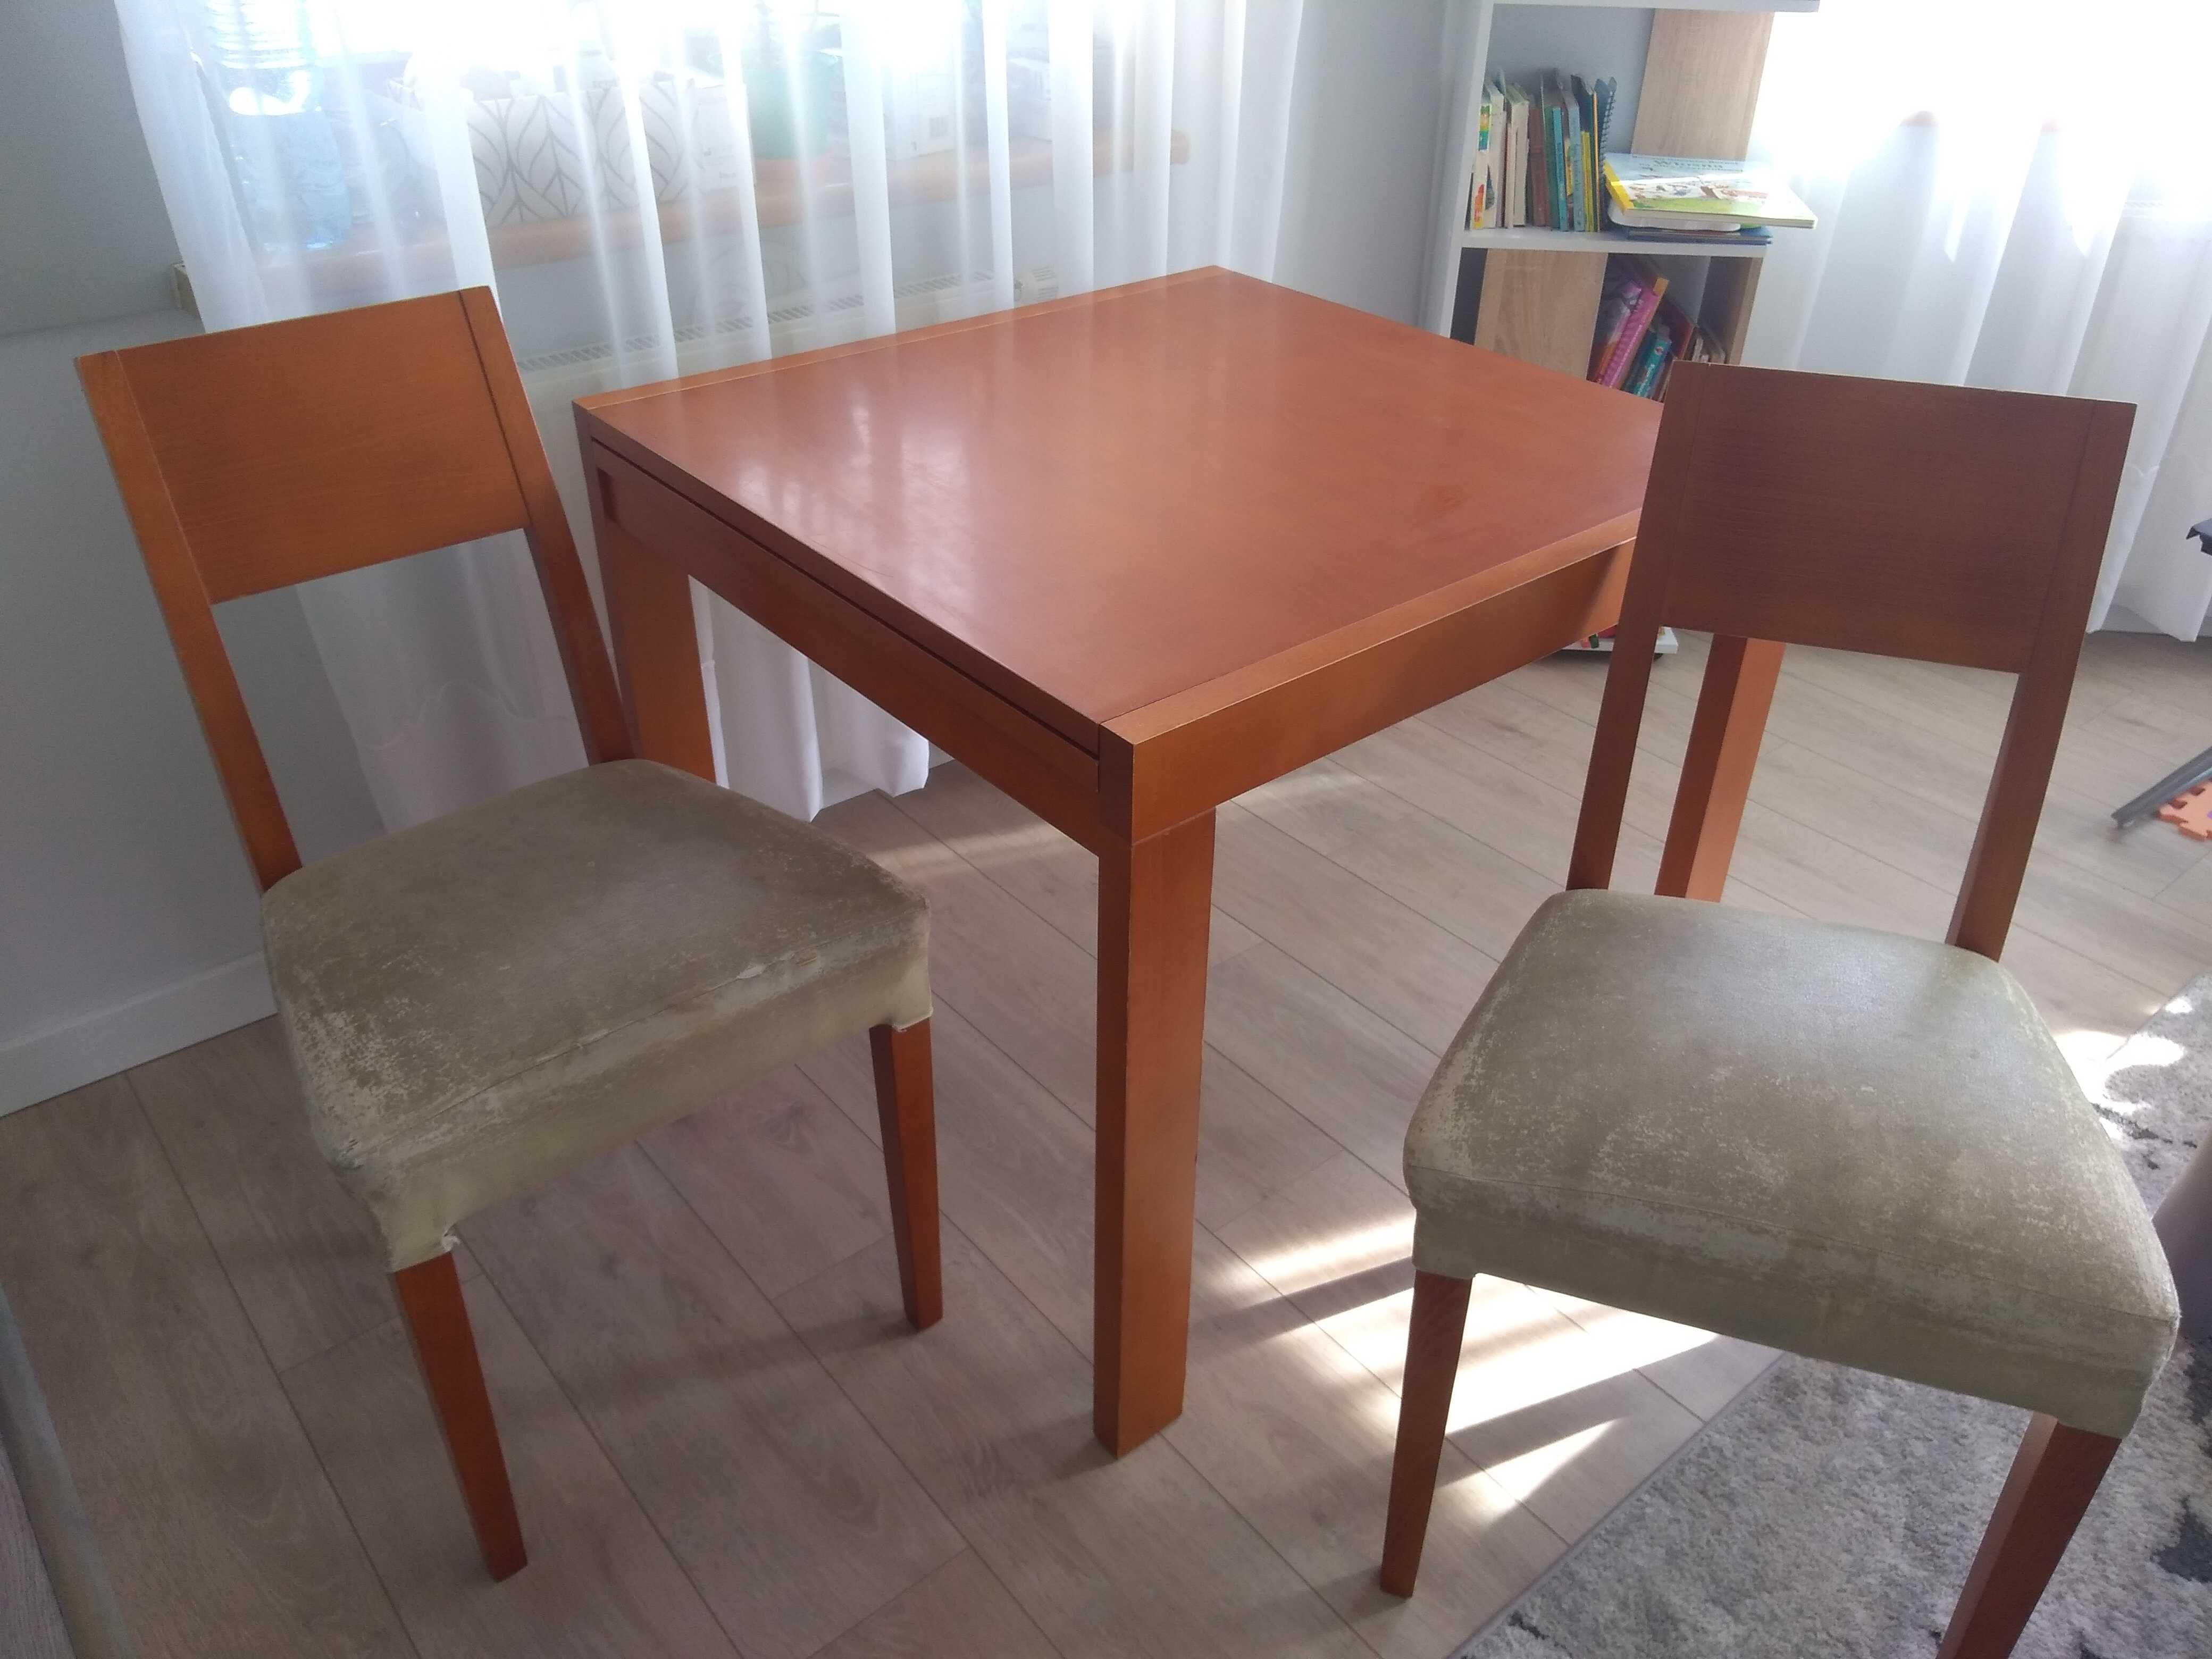 Stół drewniany 85*85 cm, rozkładany + 2 krzesła